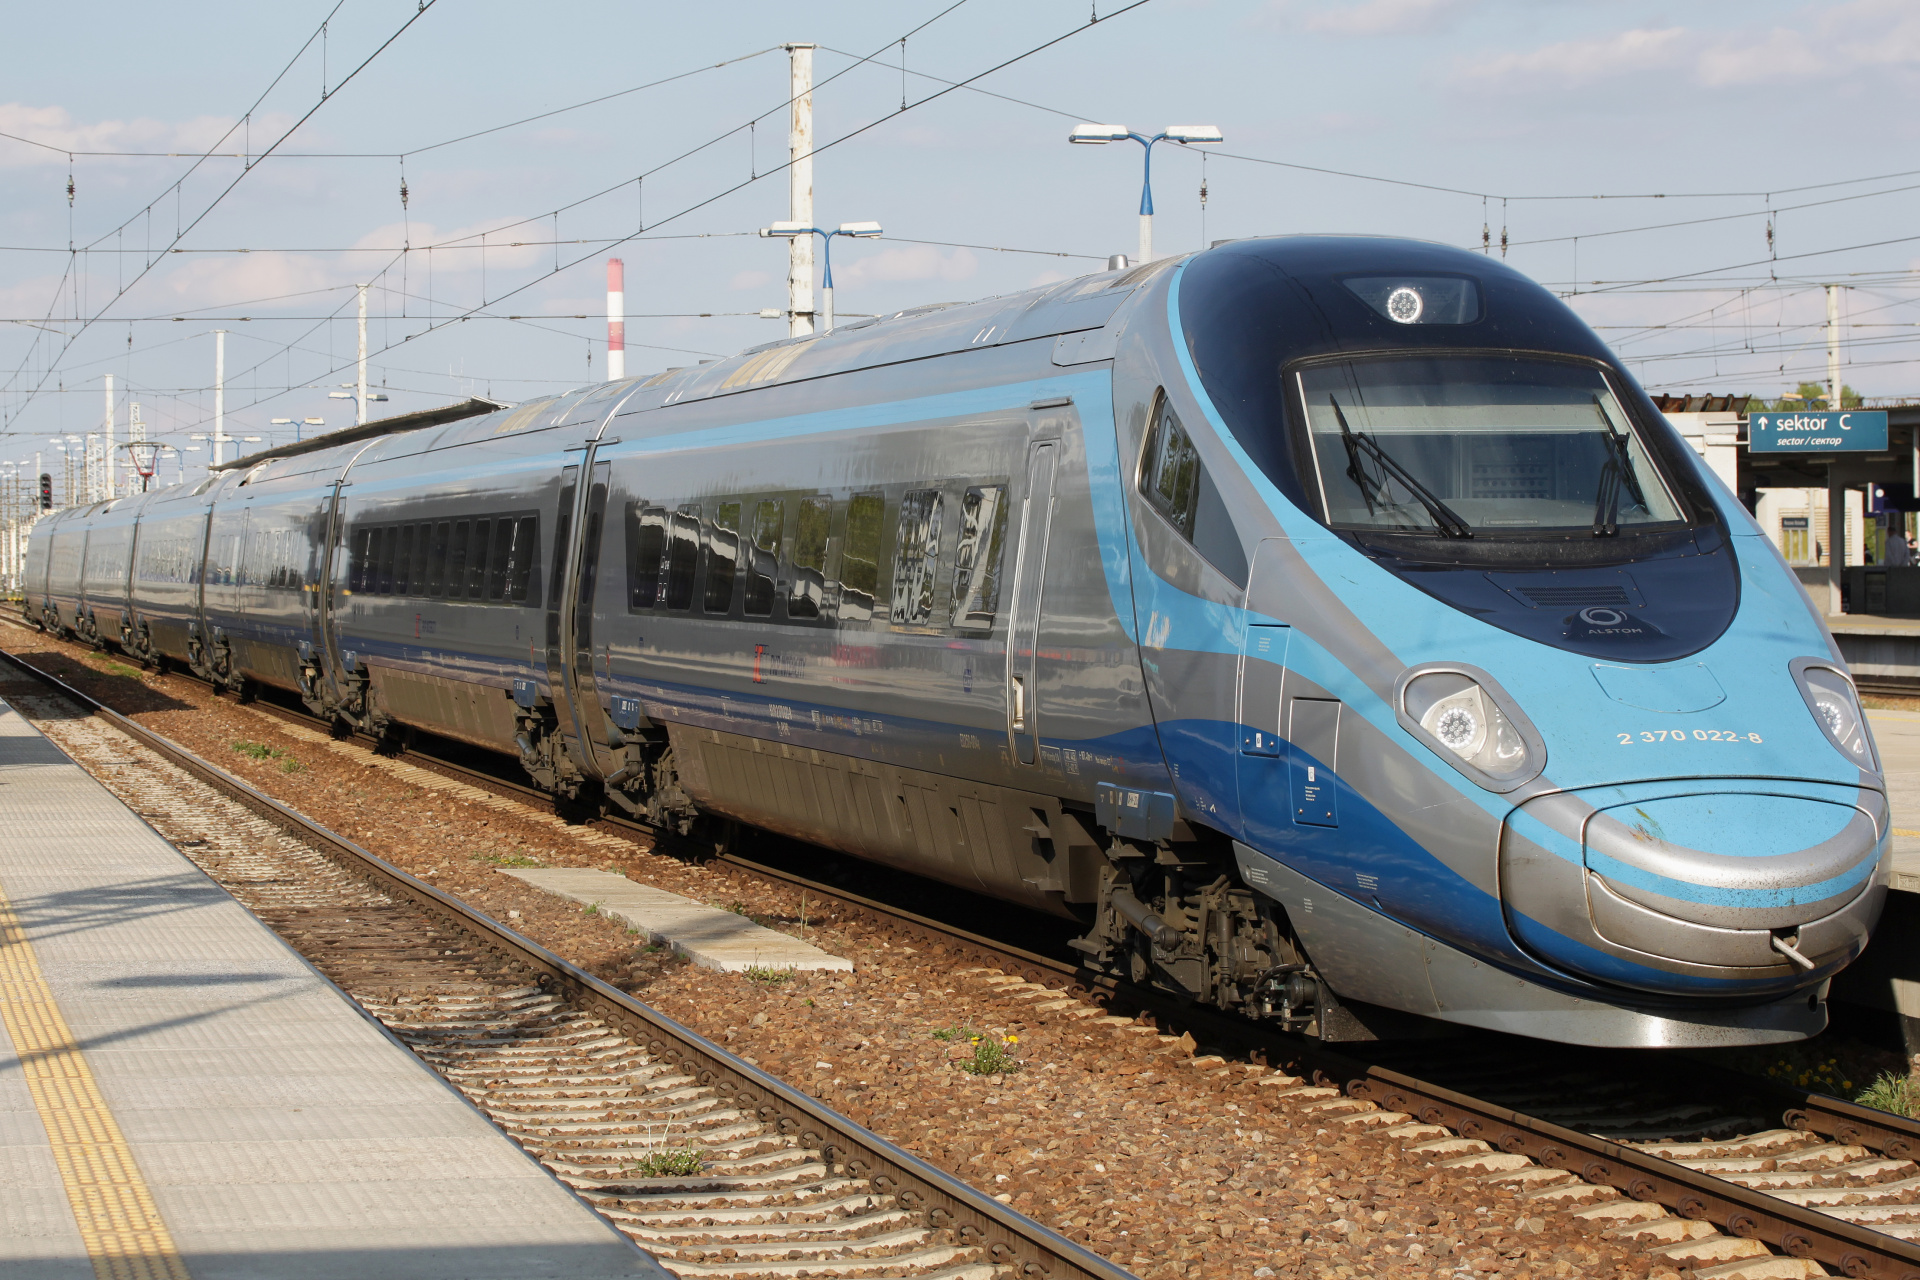 ED250-004 (Pojazdy » Pociągi i lokomotywy » Alstom ETR 610 Pendolino)